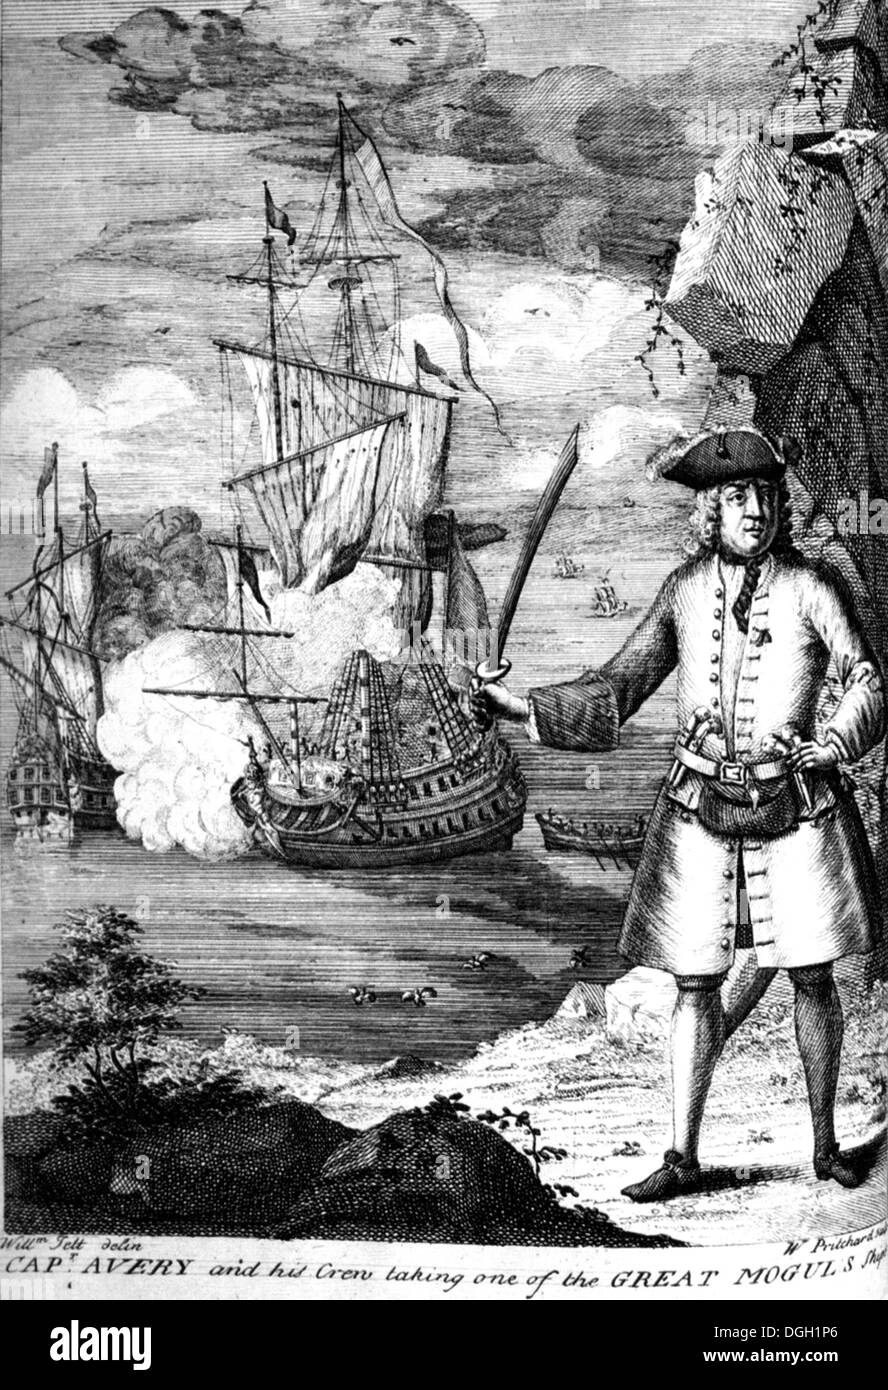 HENRY AVERY (1659-1696?) Englische Piraten unter eines der Großmogul Schiffe in einer Engaving aus dem 18. Jahrhundert Stockfoto